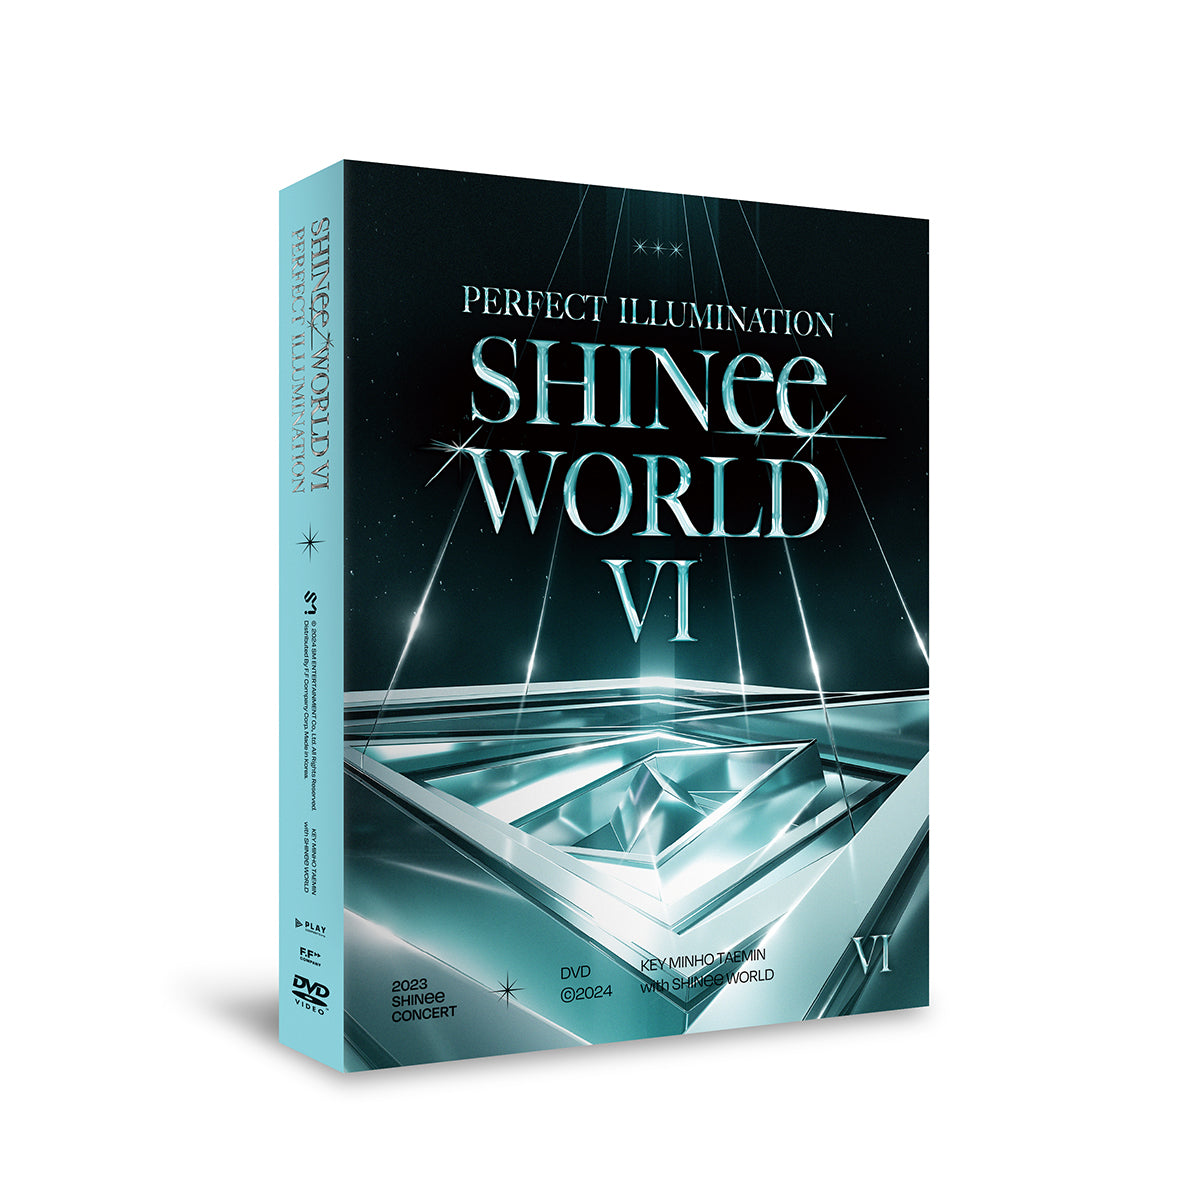 SHINee - SHINee WORLD VI [PERFECT ILLUMINATION] in SEOUL DVD [PRE-ORDER]